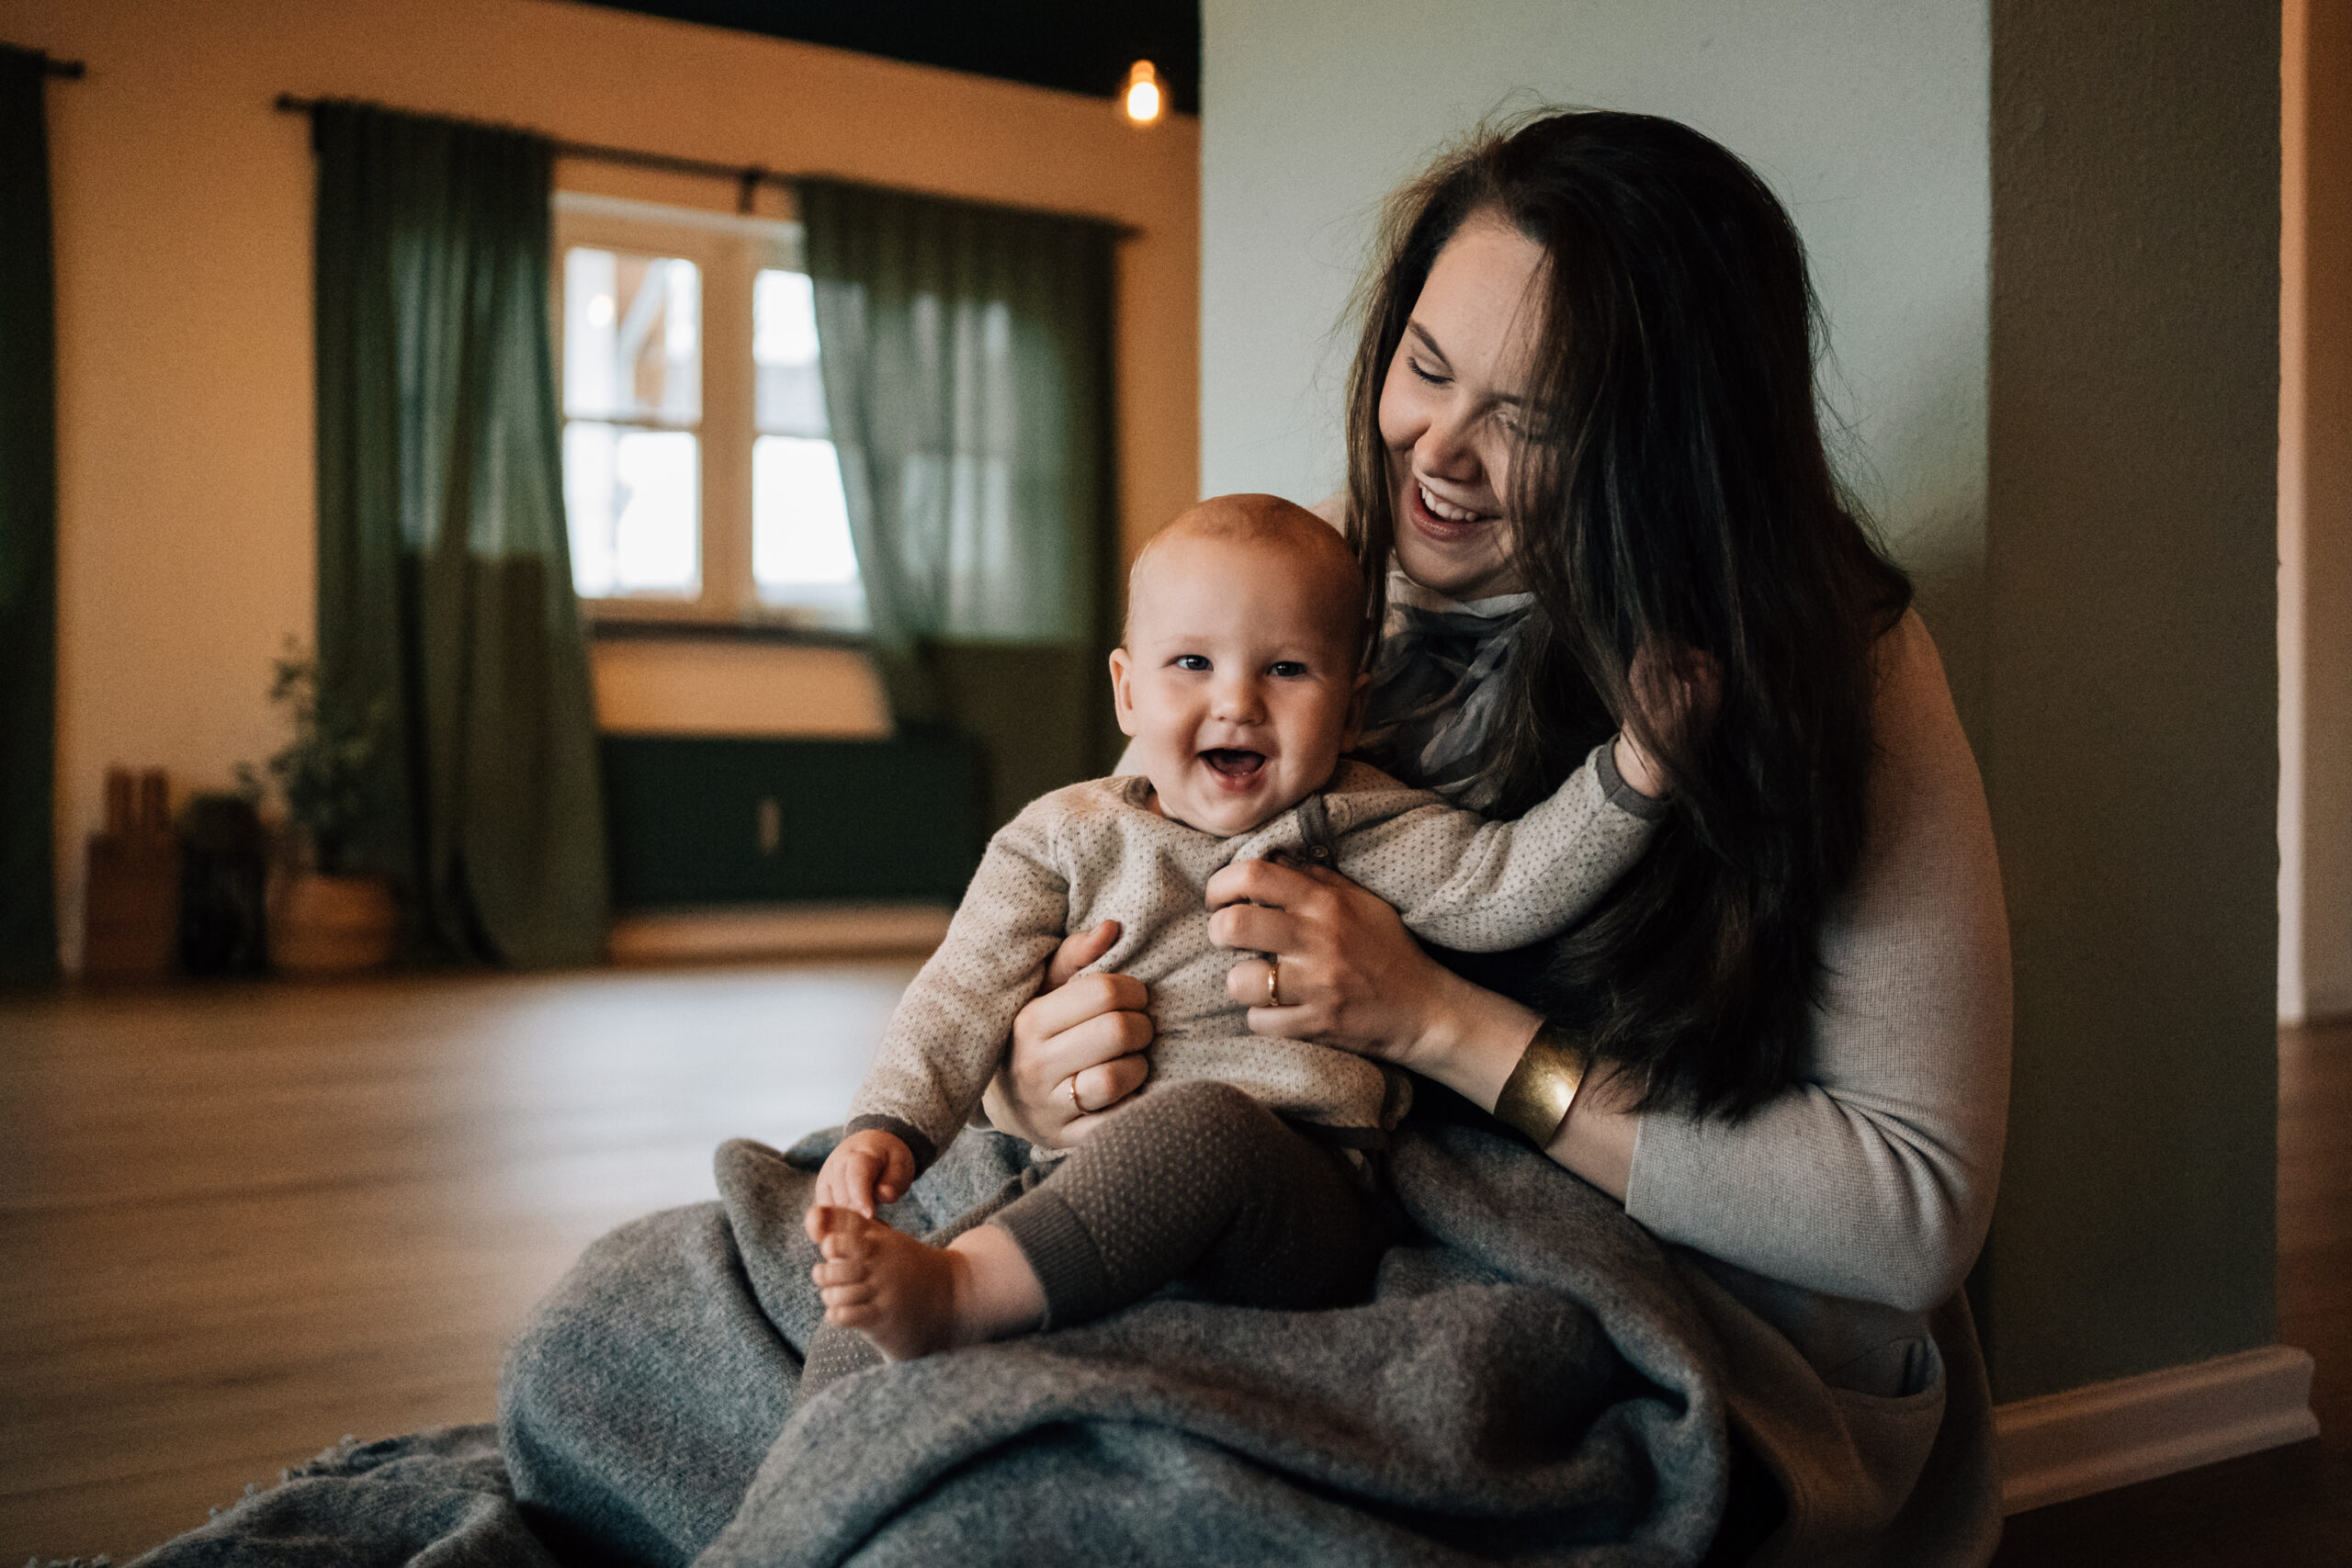 Eine Frau mit dunklen langen Haaren hält ein Baby vor sich. Das Baby lacht herzlich.